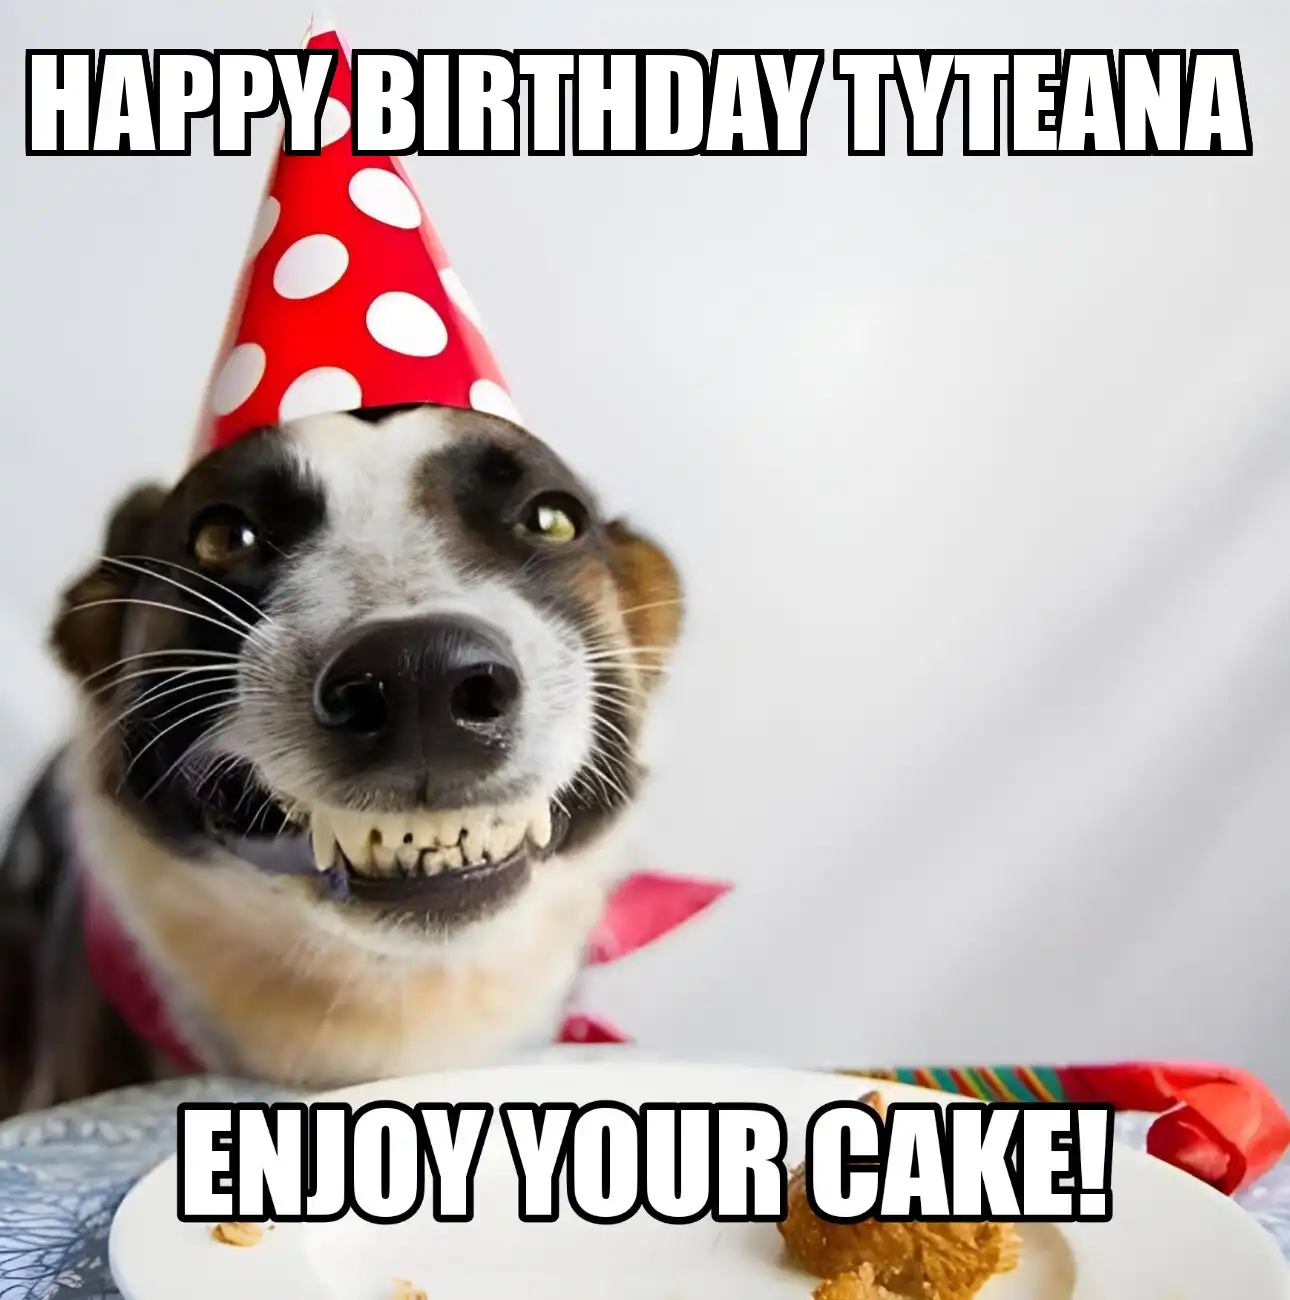 Happy Birthday Tyteana Enjoy Your Cake Dog Meme